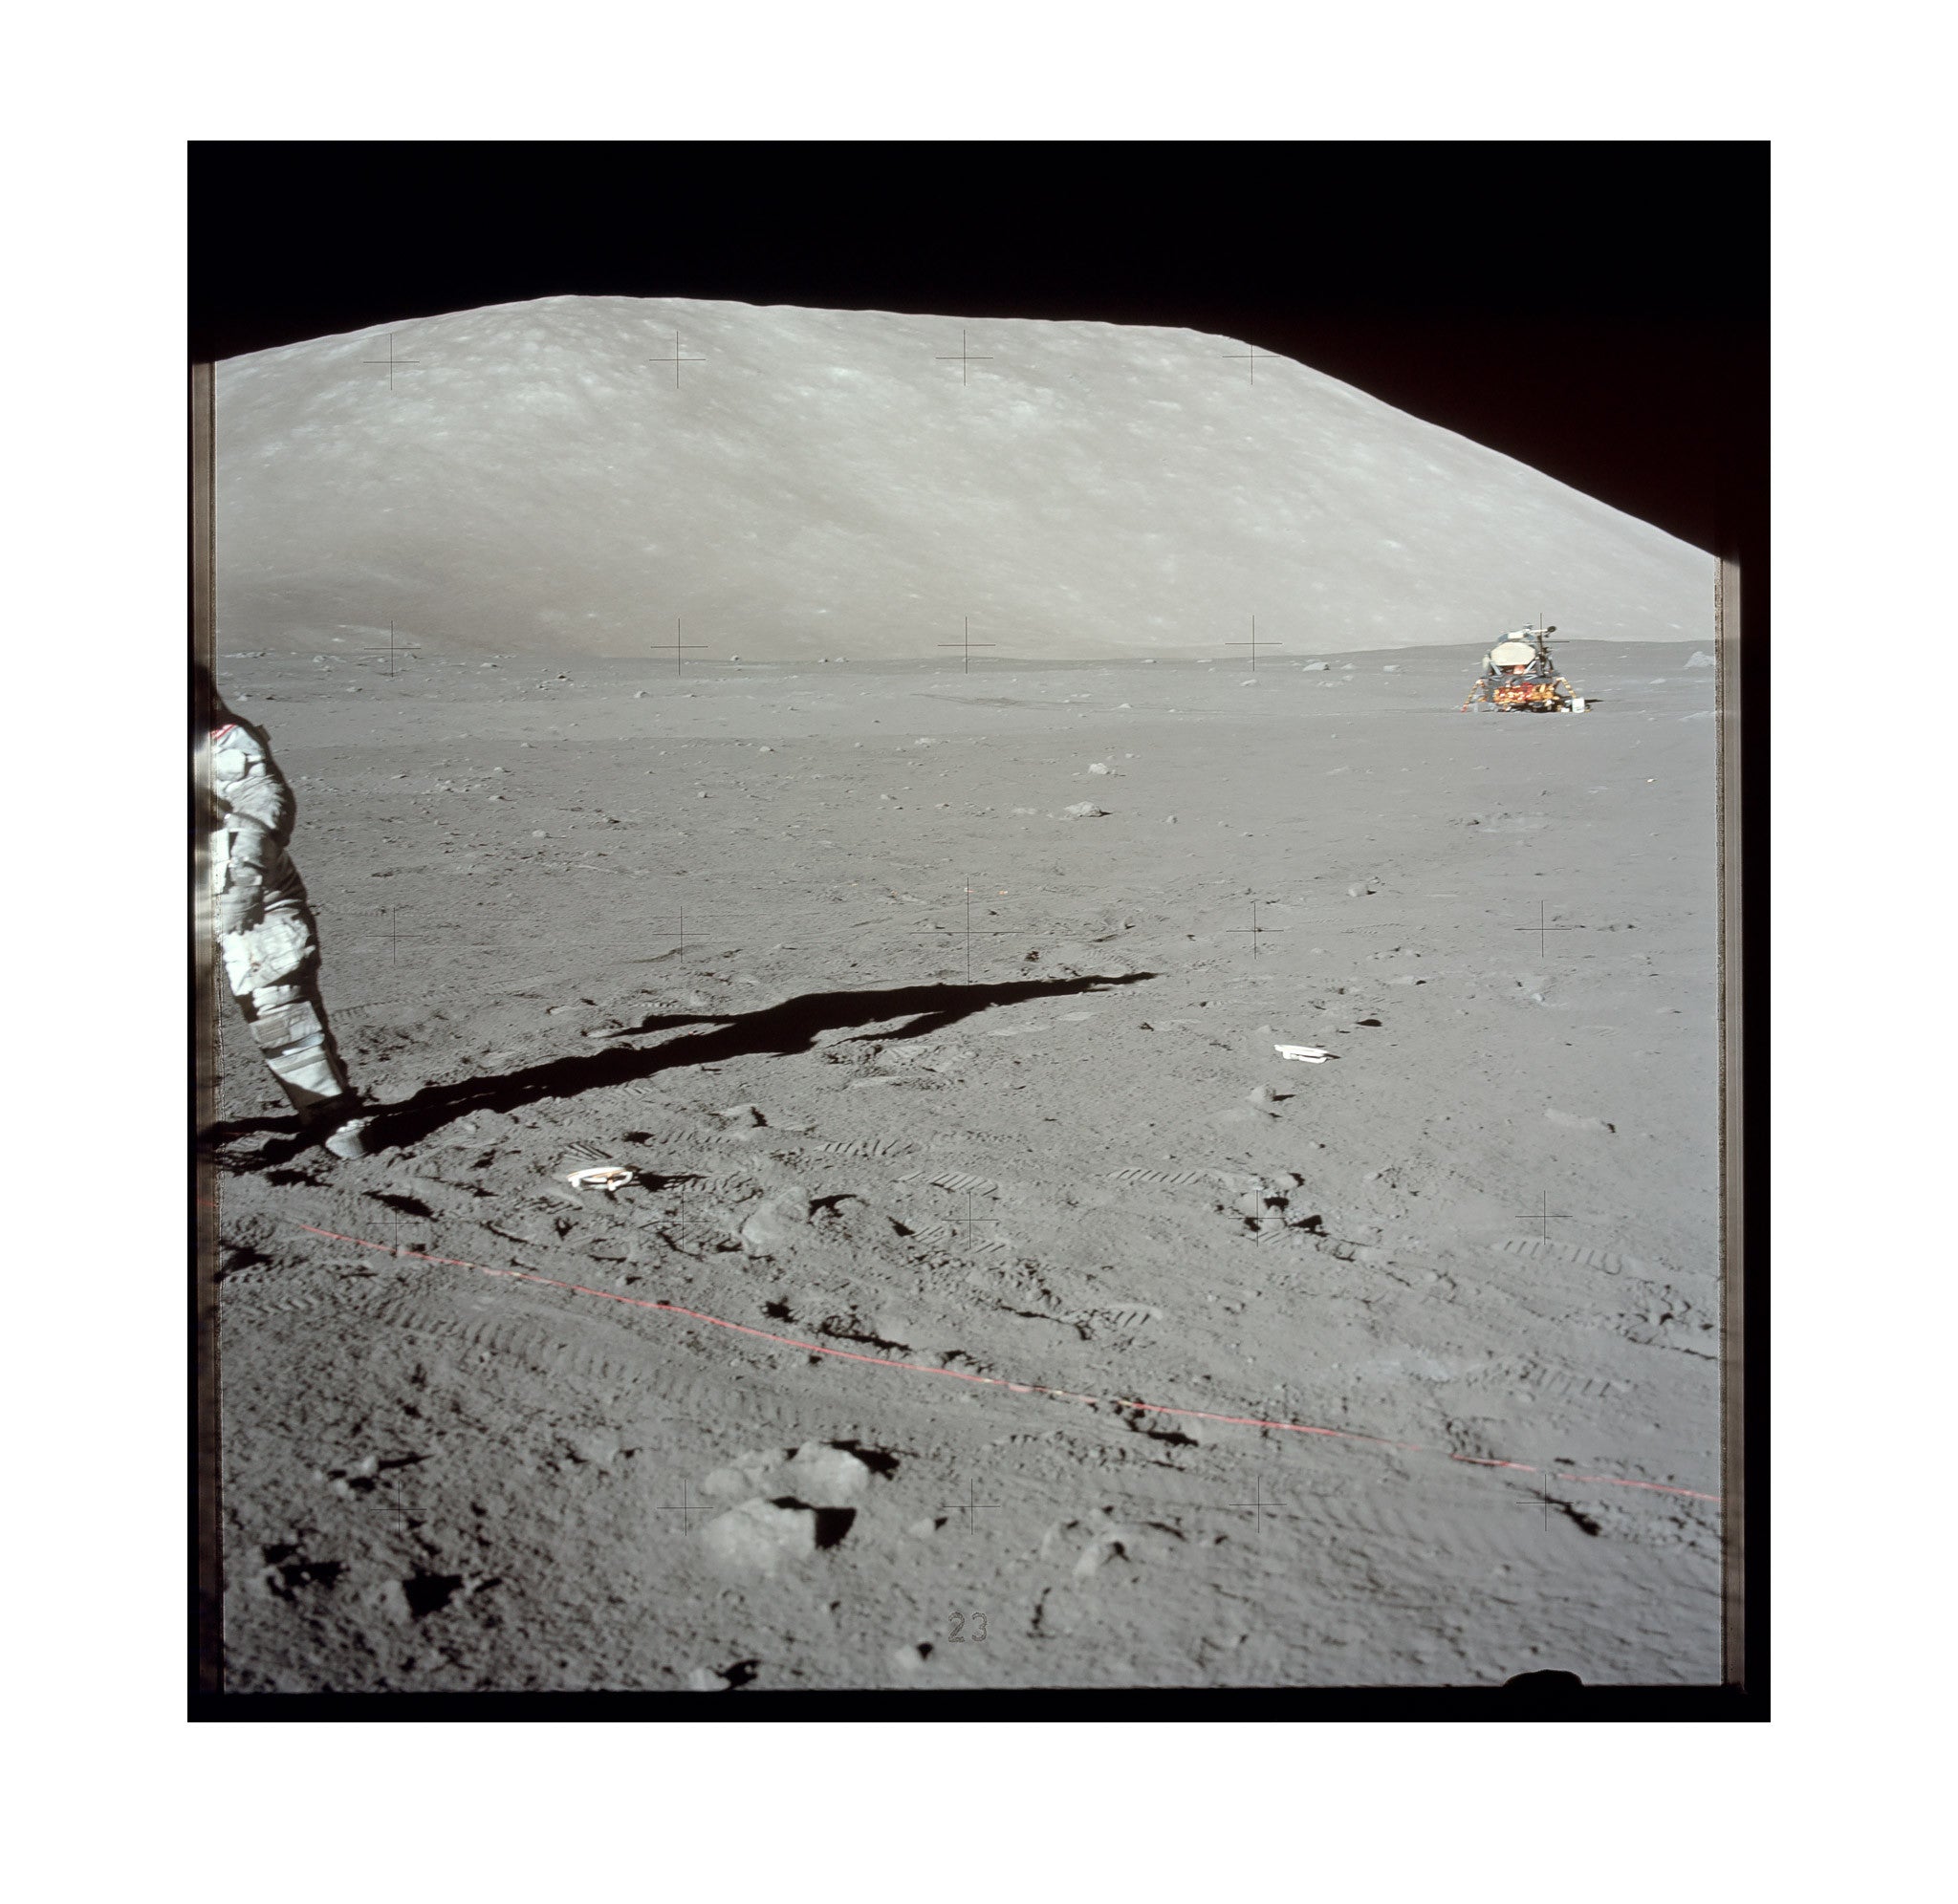 Apollo 17 – Deploying Transmitter